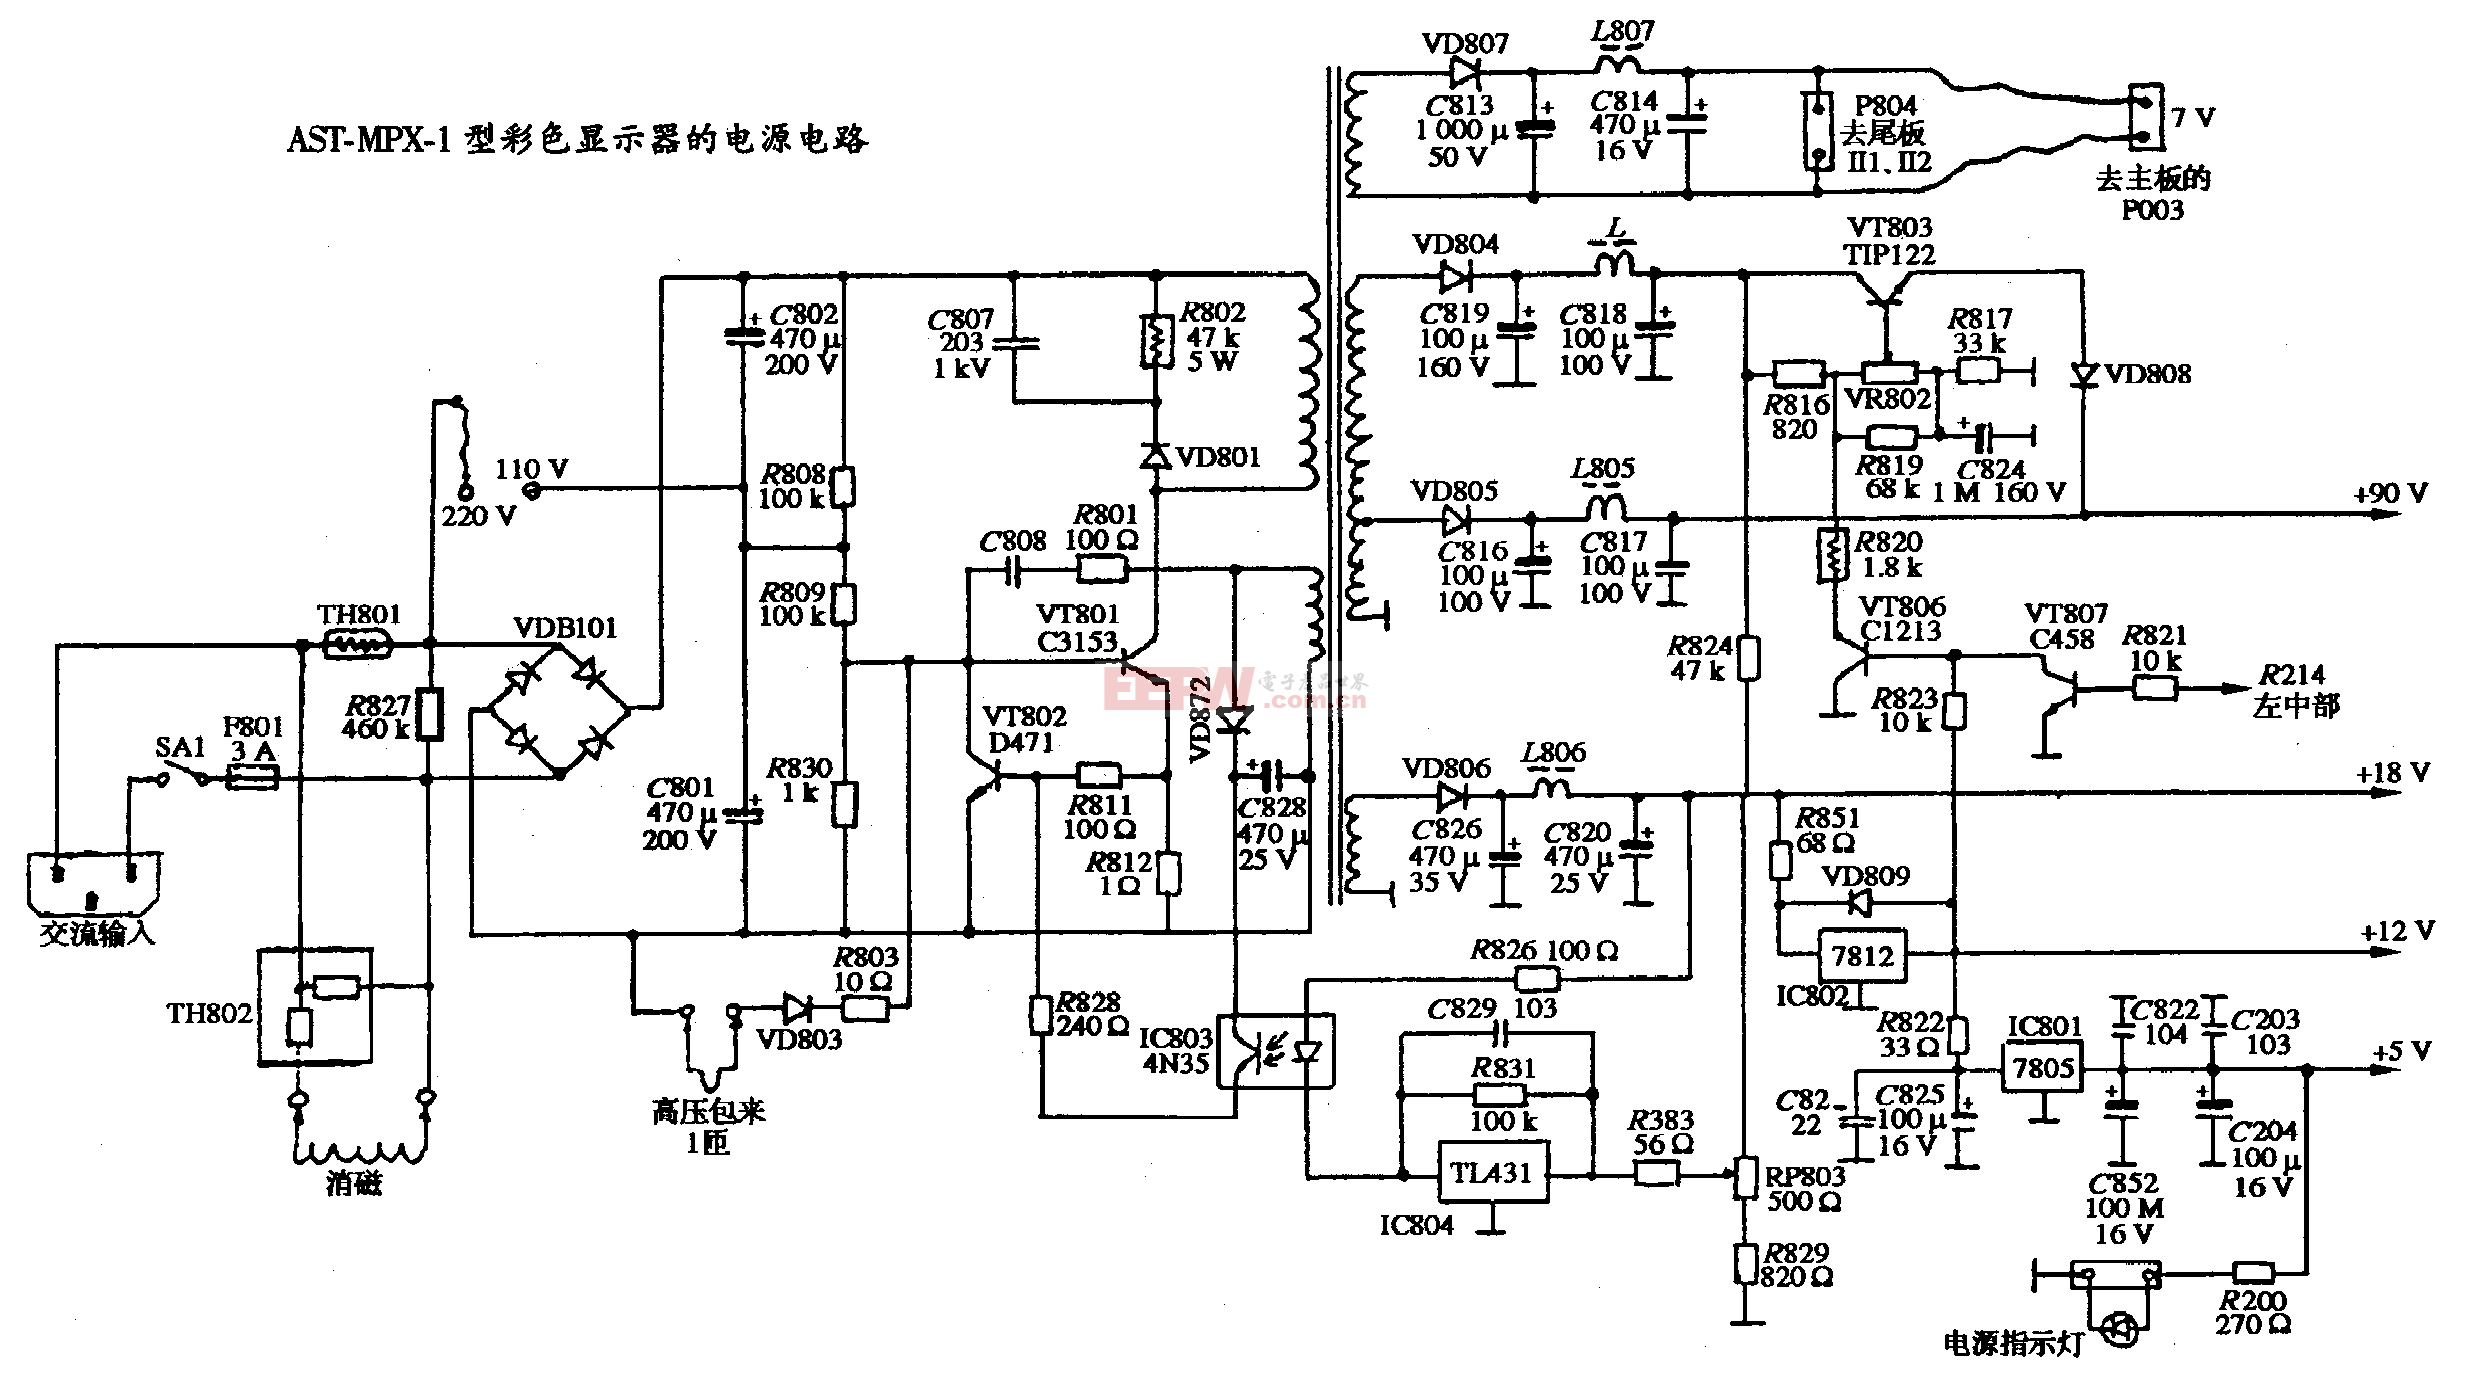 13、AST MPX-1型彩色顯示器的電源電路圖